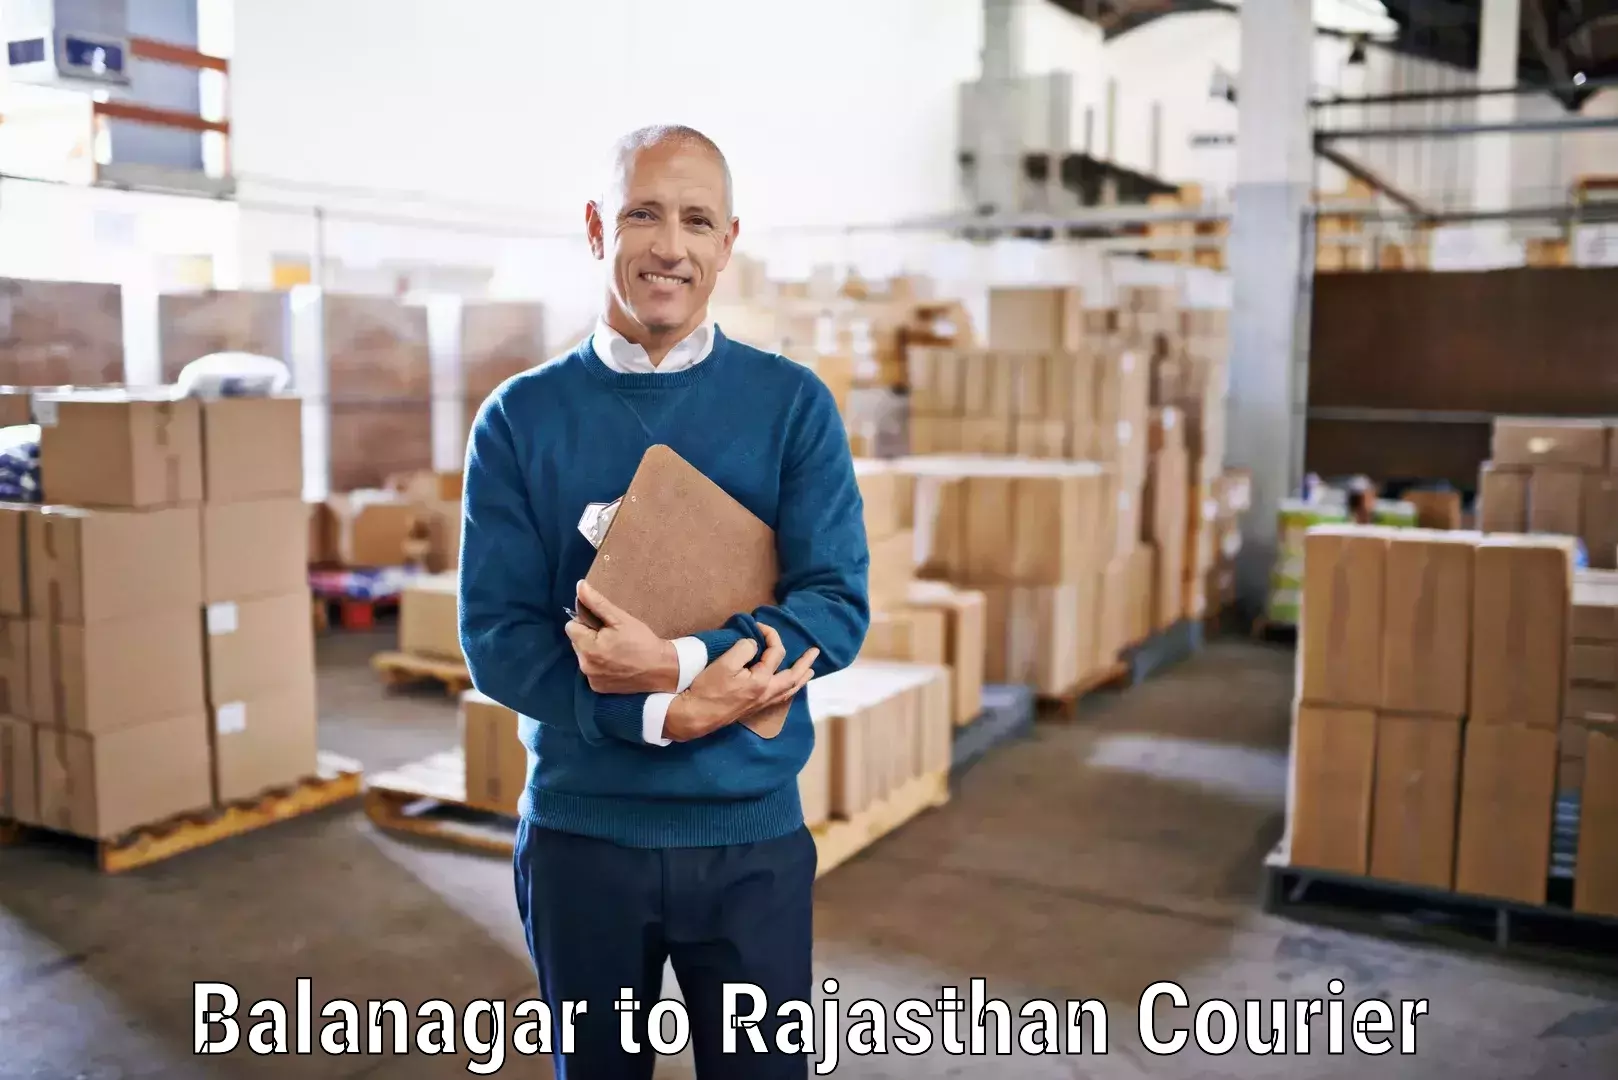 Budget-friendly shipping Balanagar to Tonk